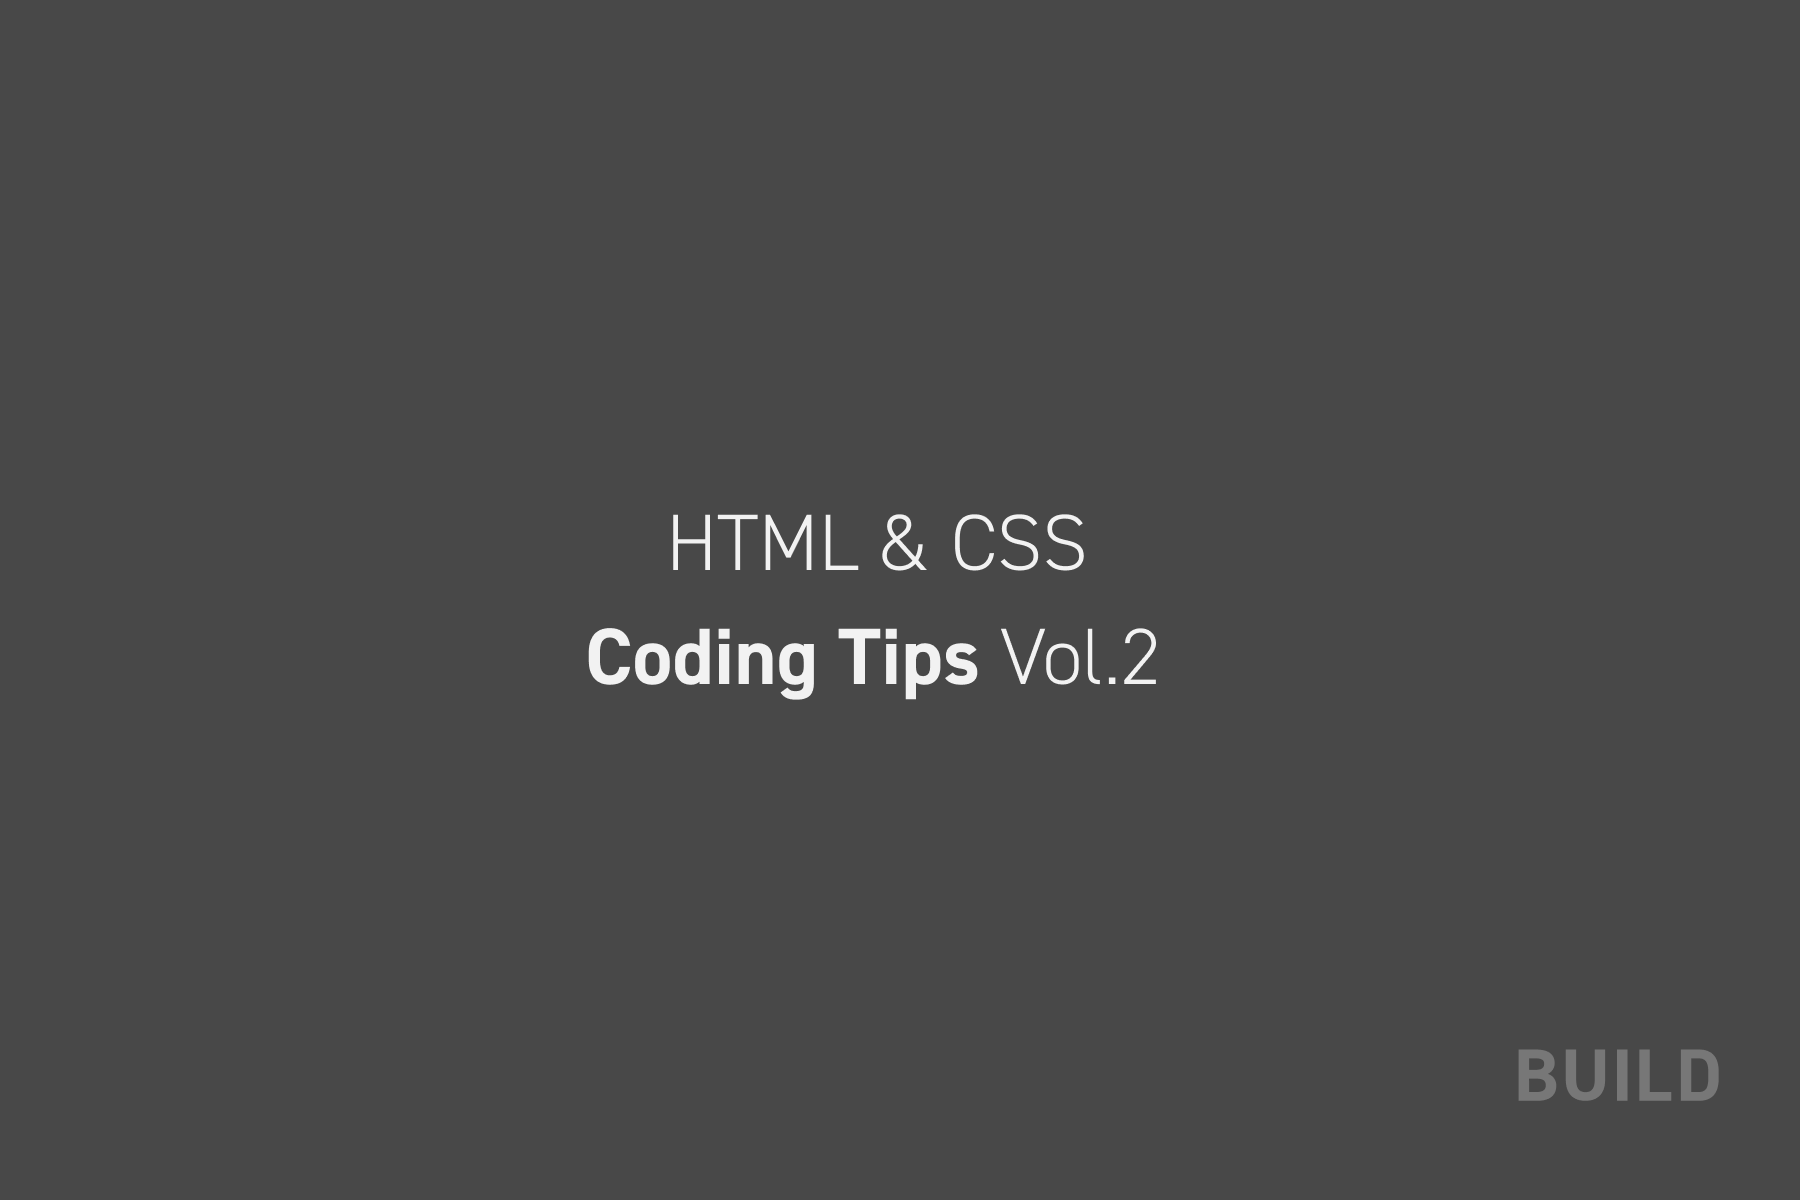 いざという時に使える7つのHTML&CSS Tips集vol.2